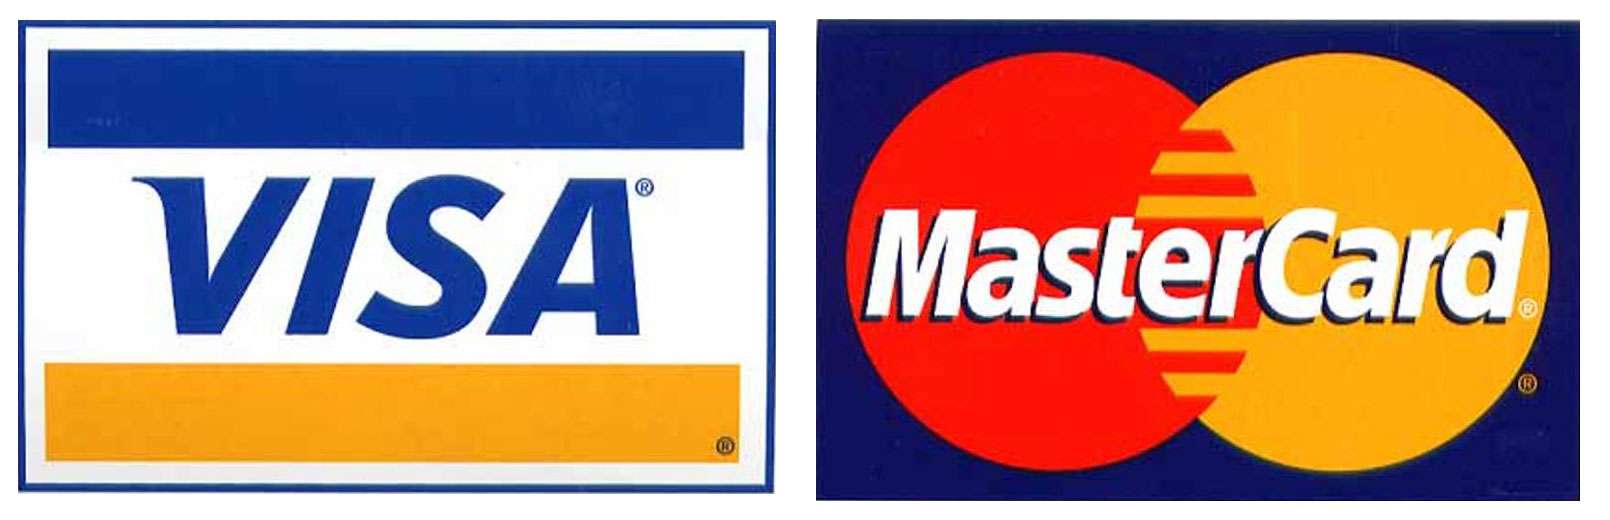 MasterCard-VISA